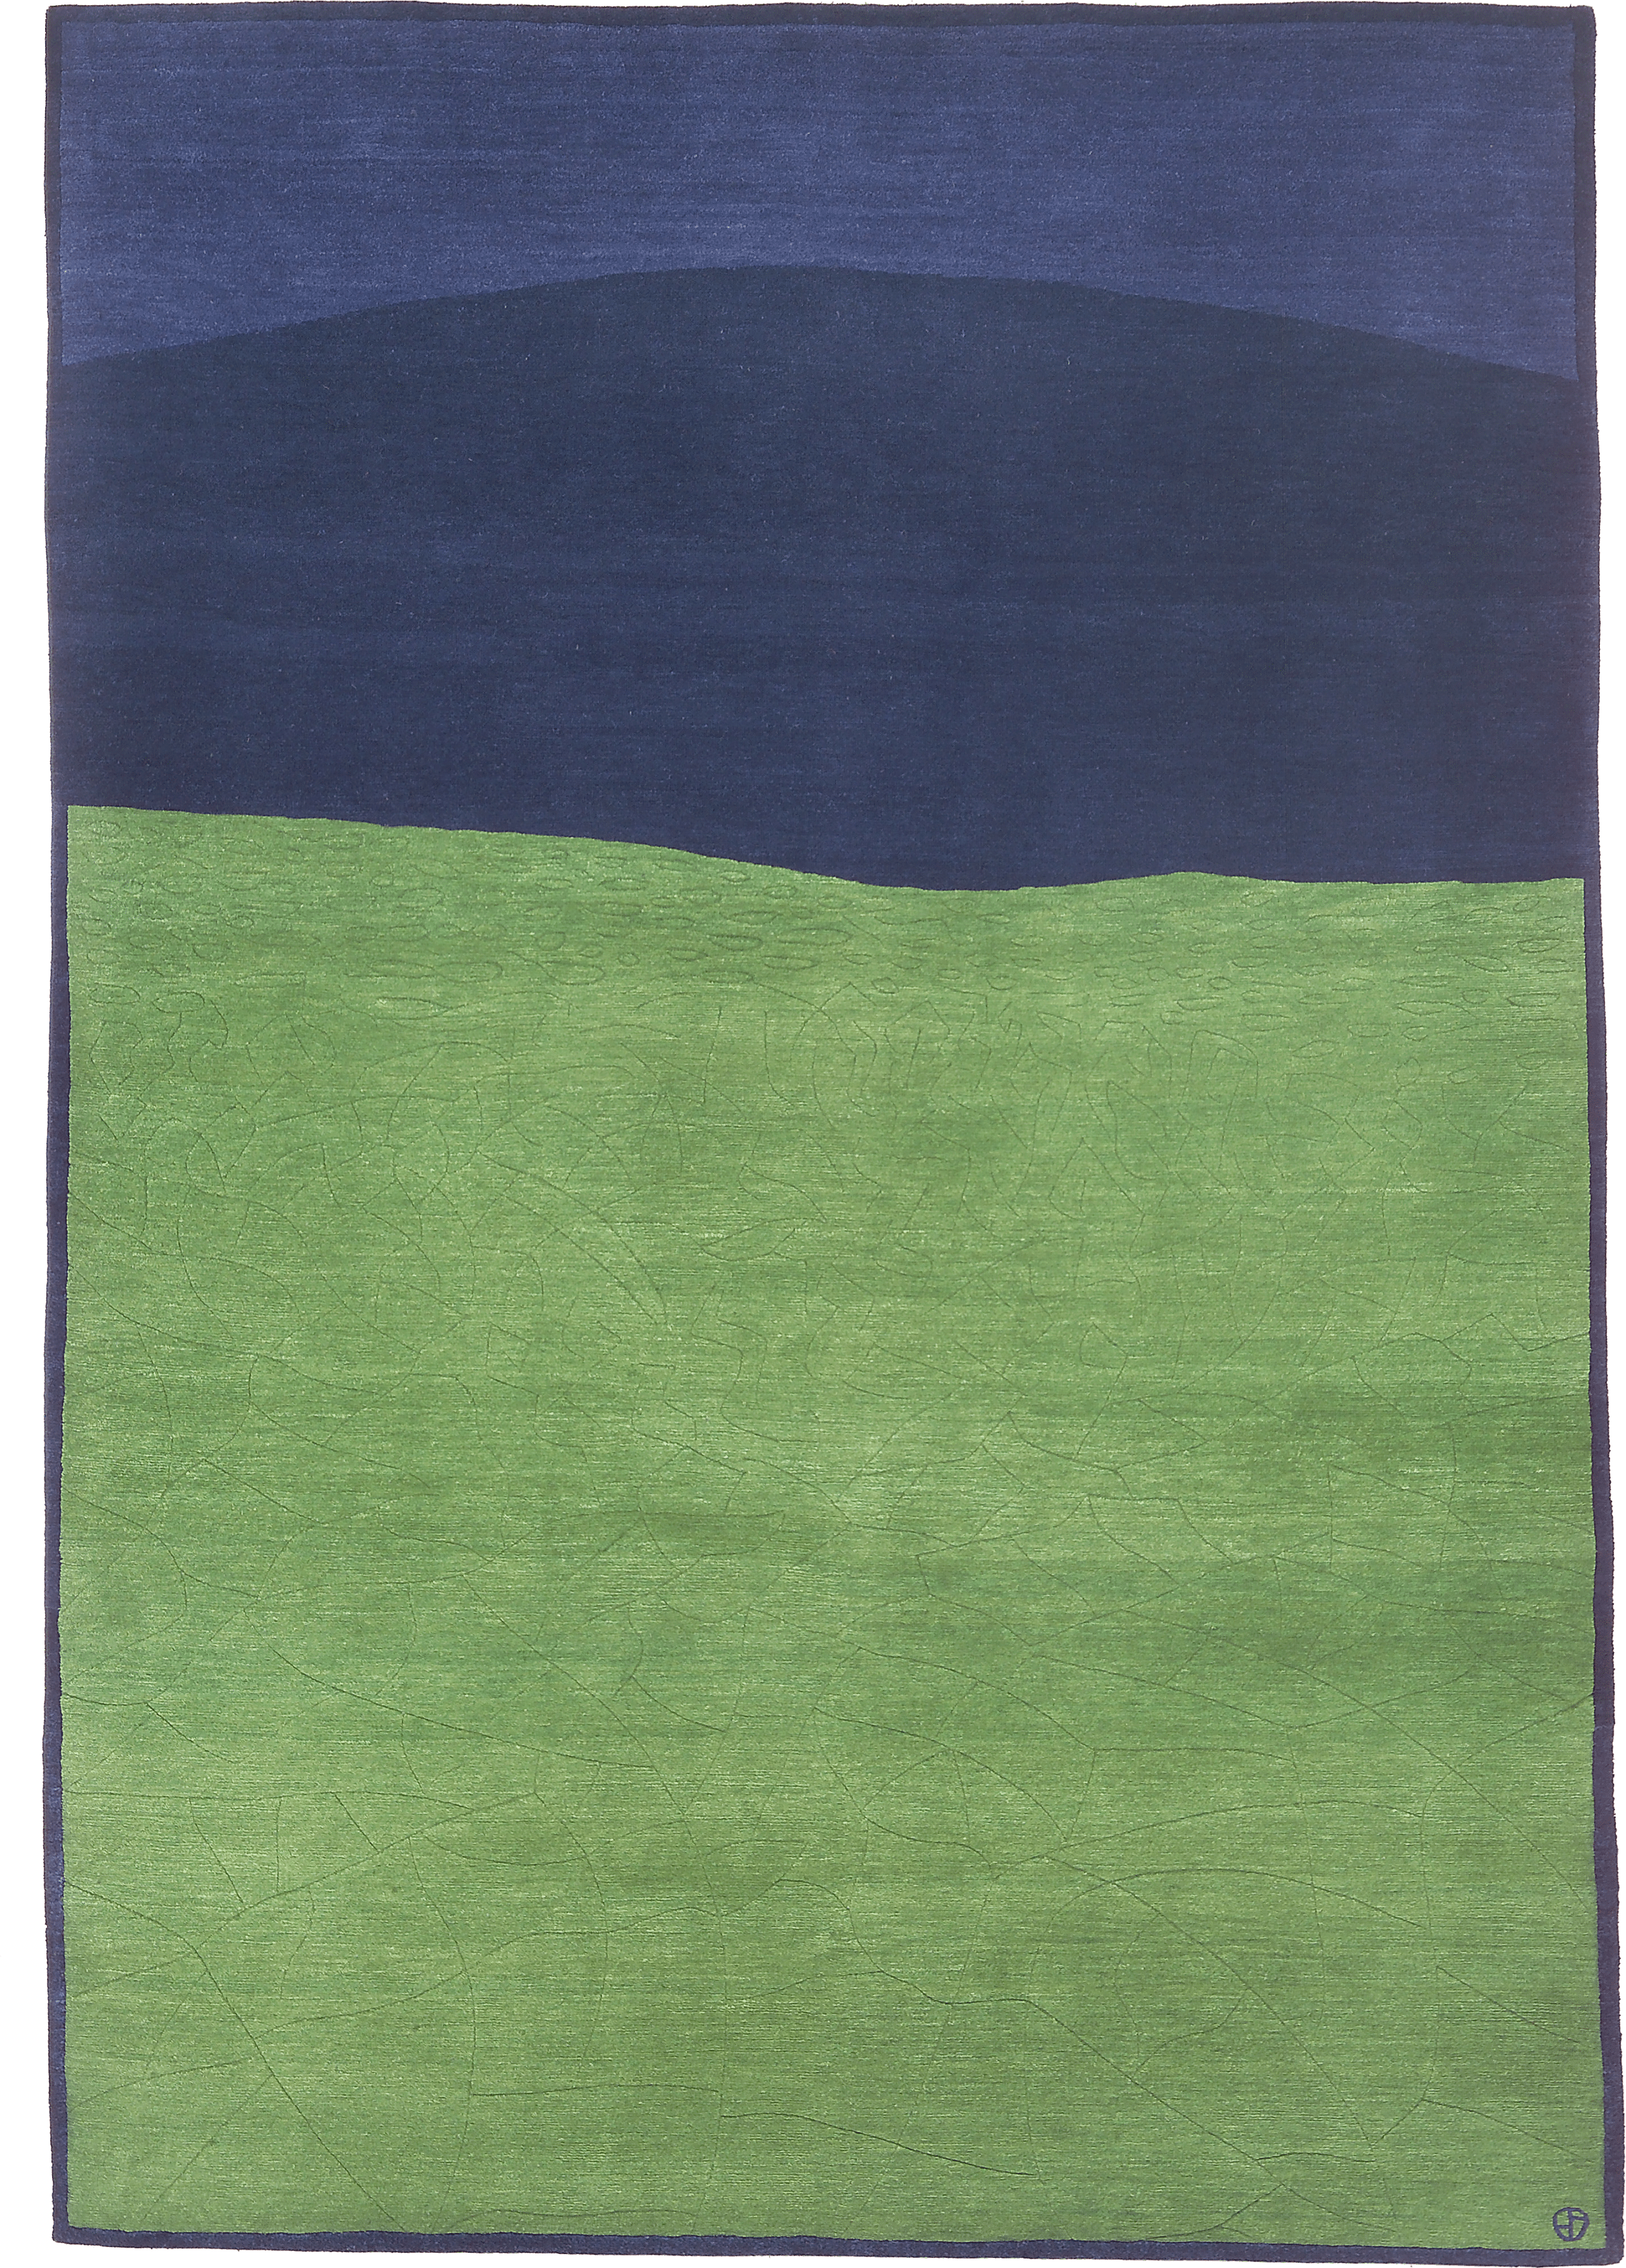 Geba Teppich "Desert green" unterteilt in 3 Flächen, grün-dunkelblau-blau, mit dunkelblauer Bordüre, feine Musterung auf der großen Fläche, aus Nepal, 100 Knoten, gefertigt aus tibetischer Hochlandschafwolle - Produktbild - Geba Teppich